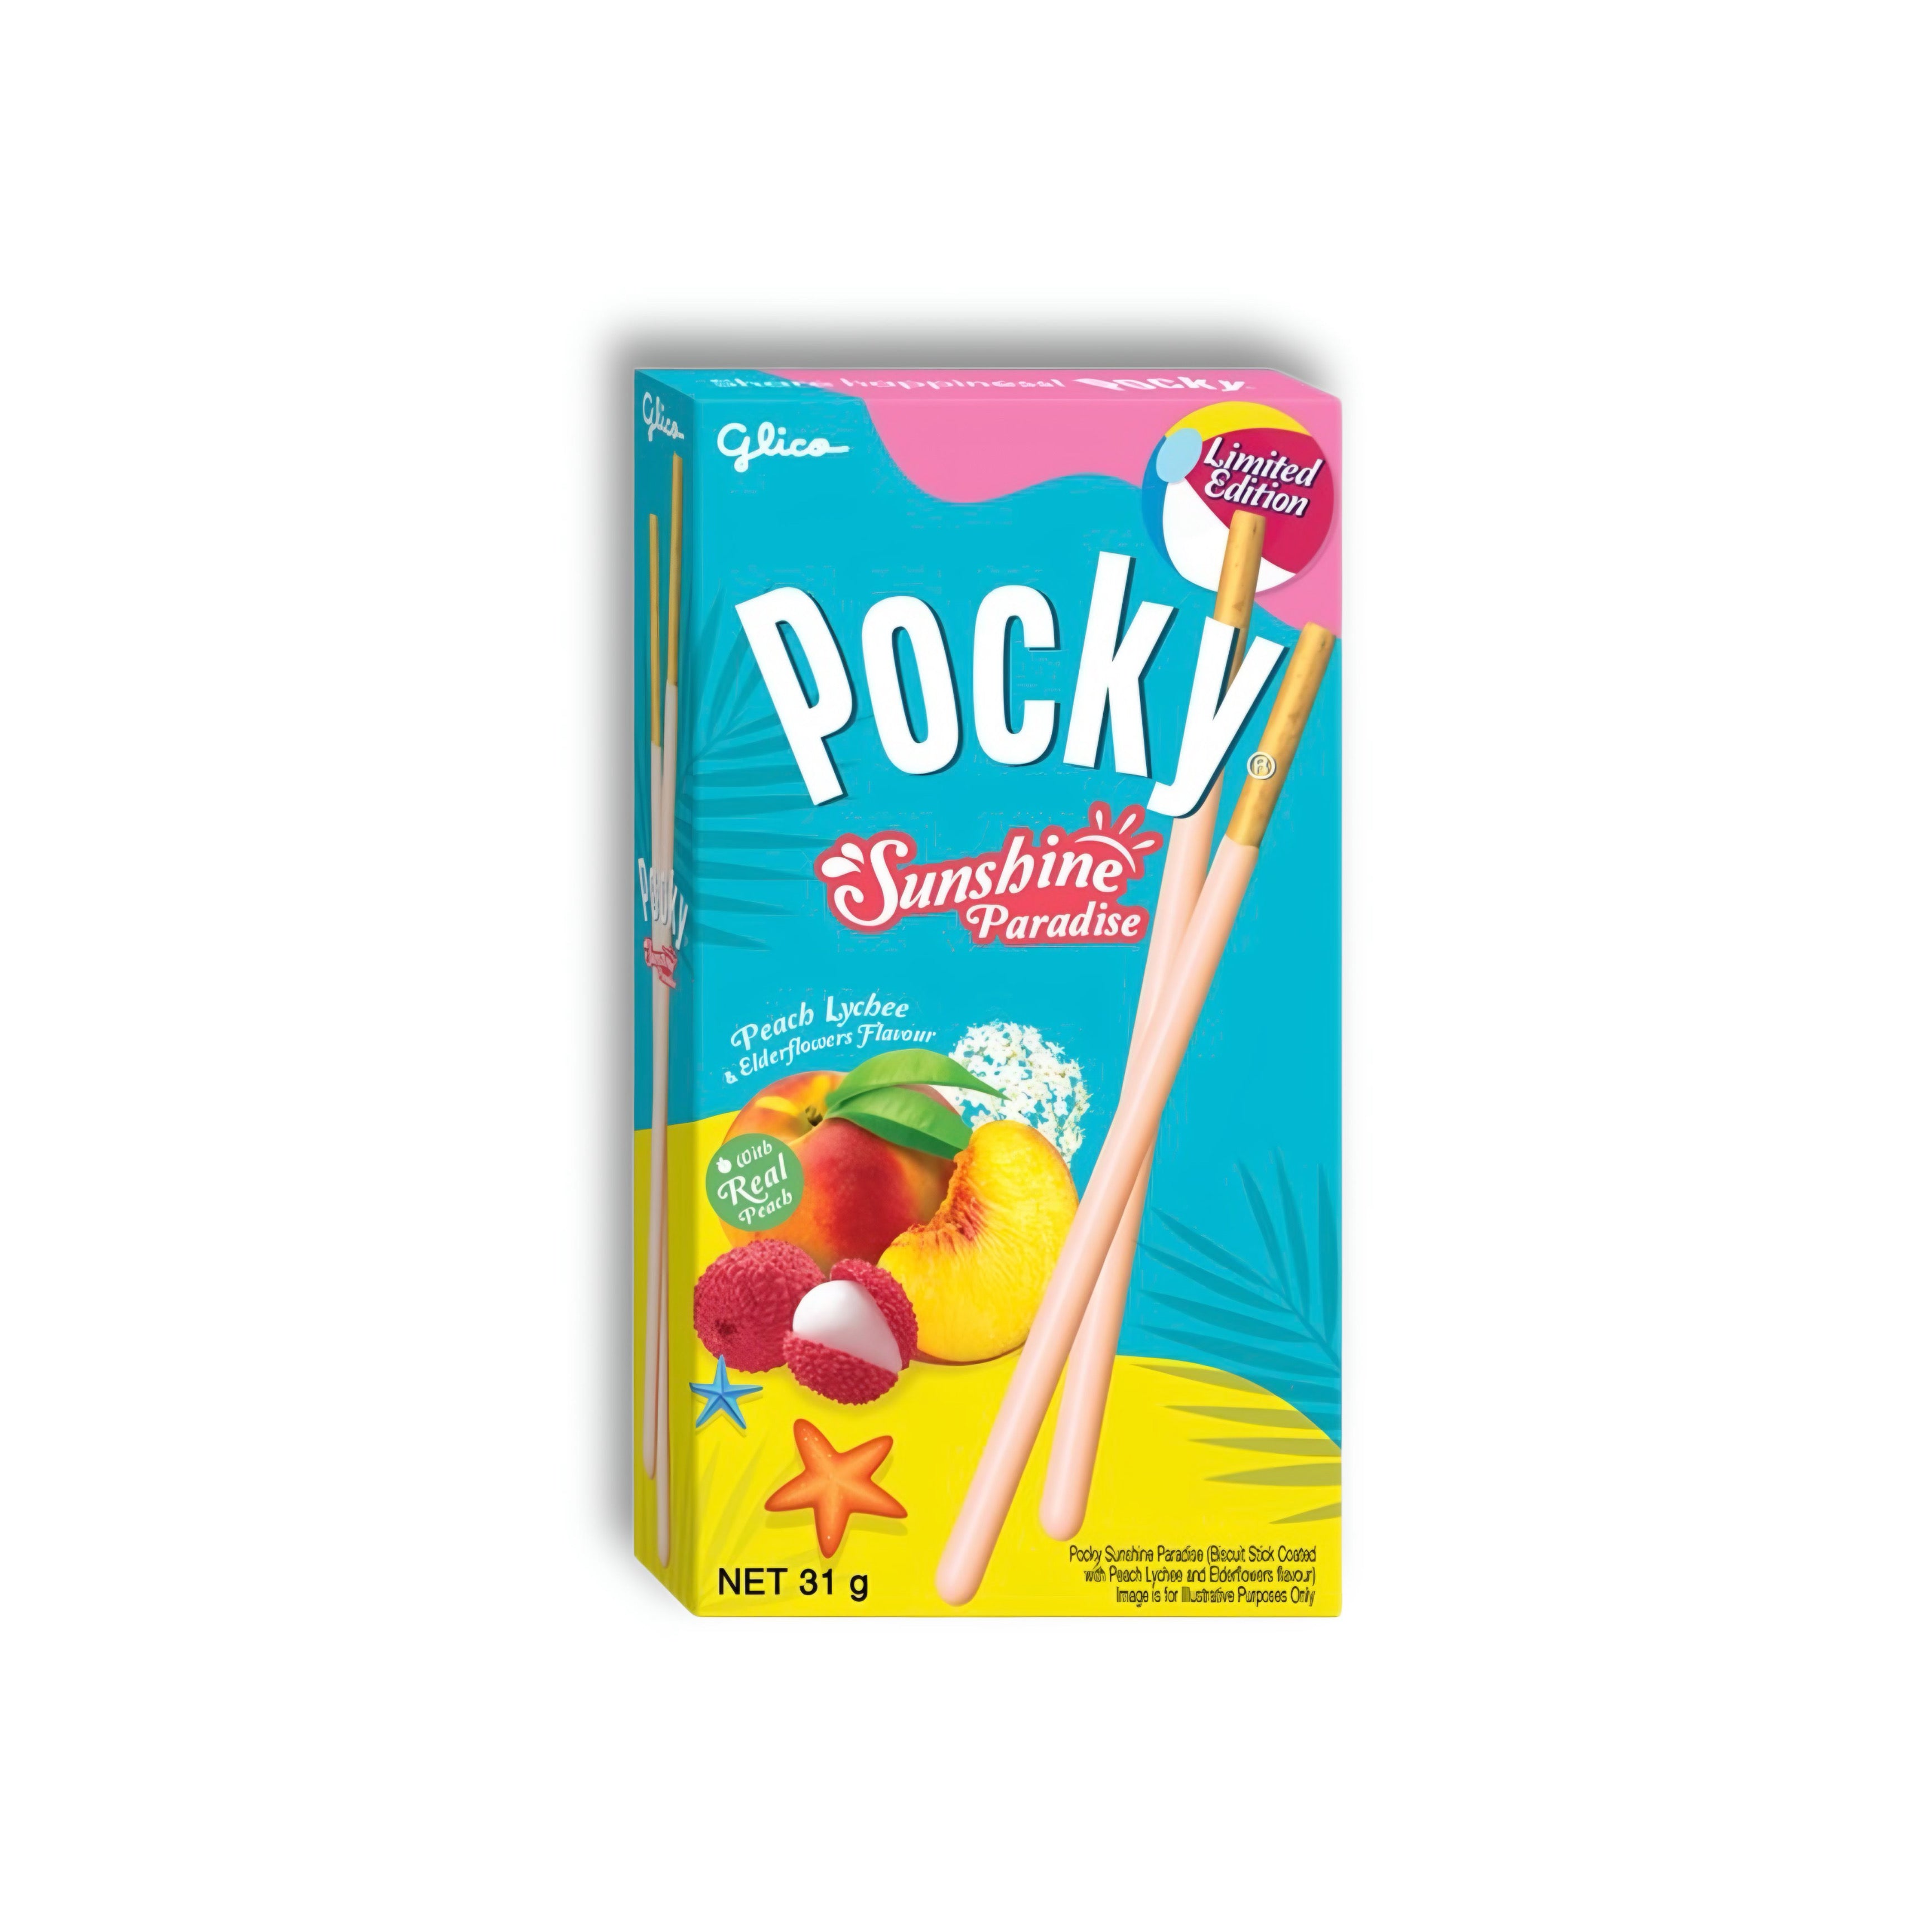 Pocky - Peach Lychee